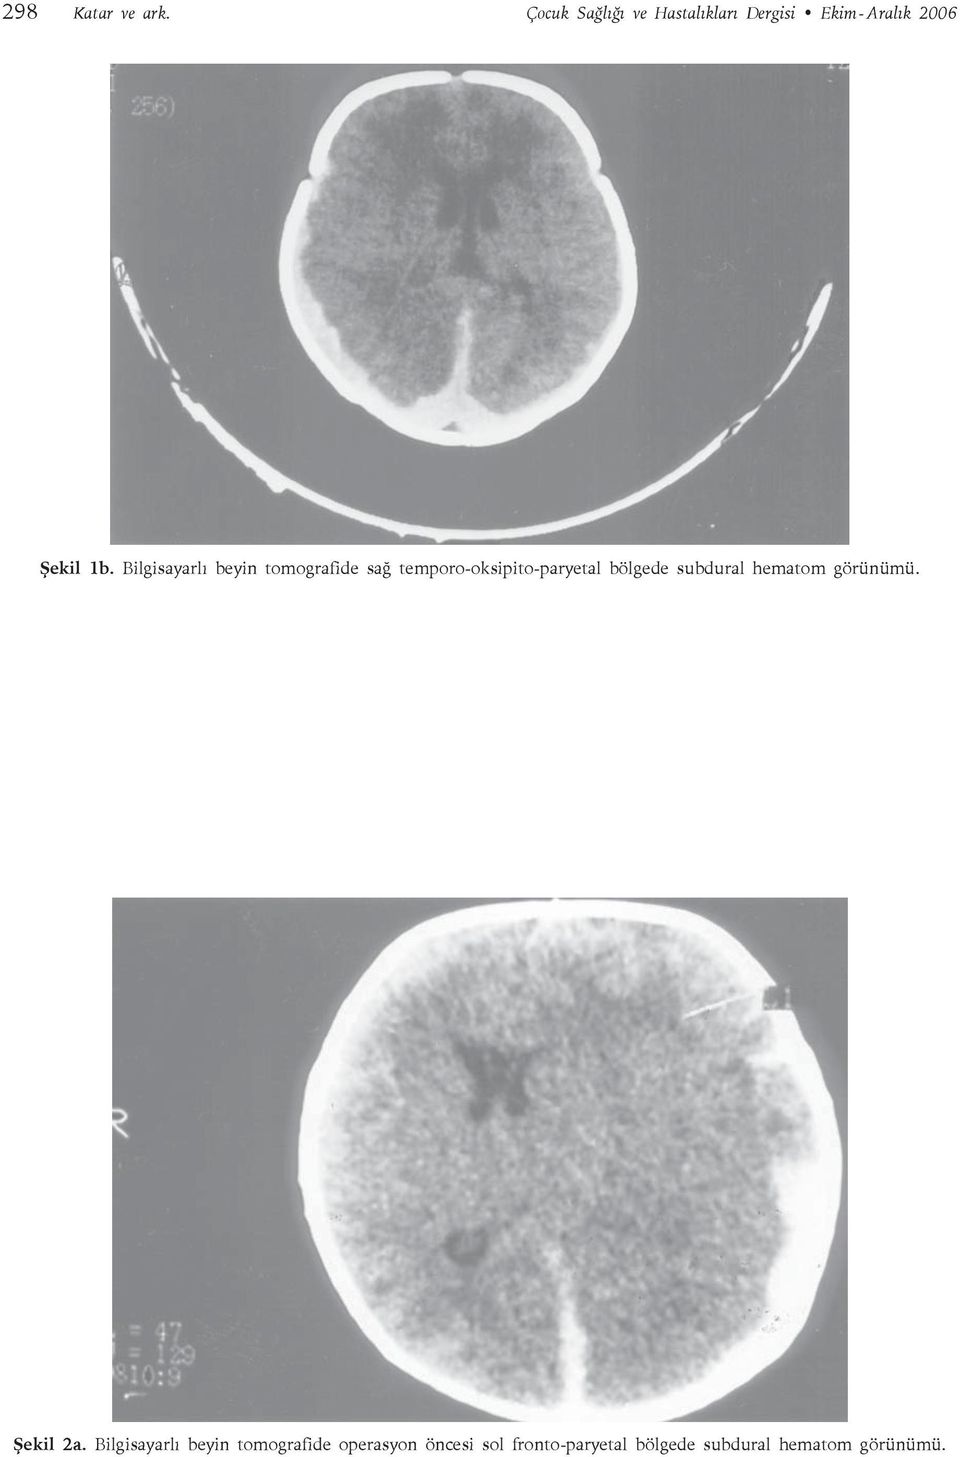 Bilgisayarlı beyin tomografide sağ temporo-oksipito-paryetal bölgede